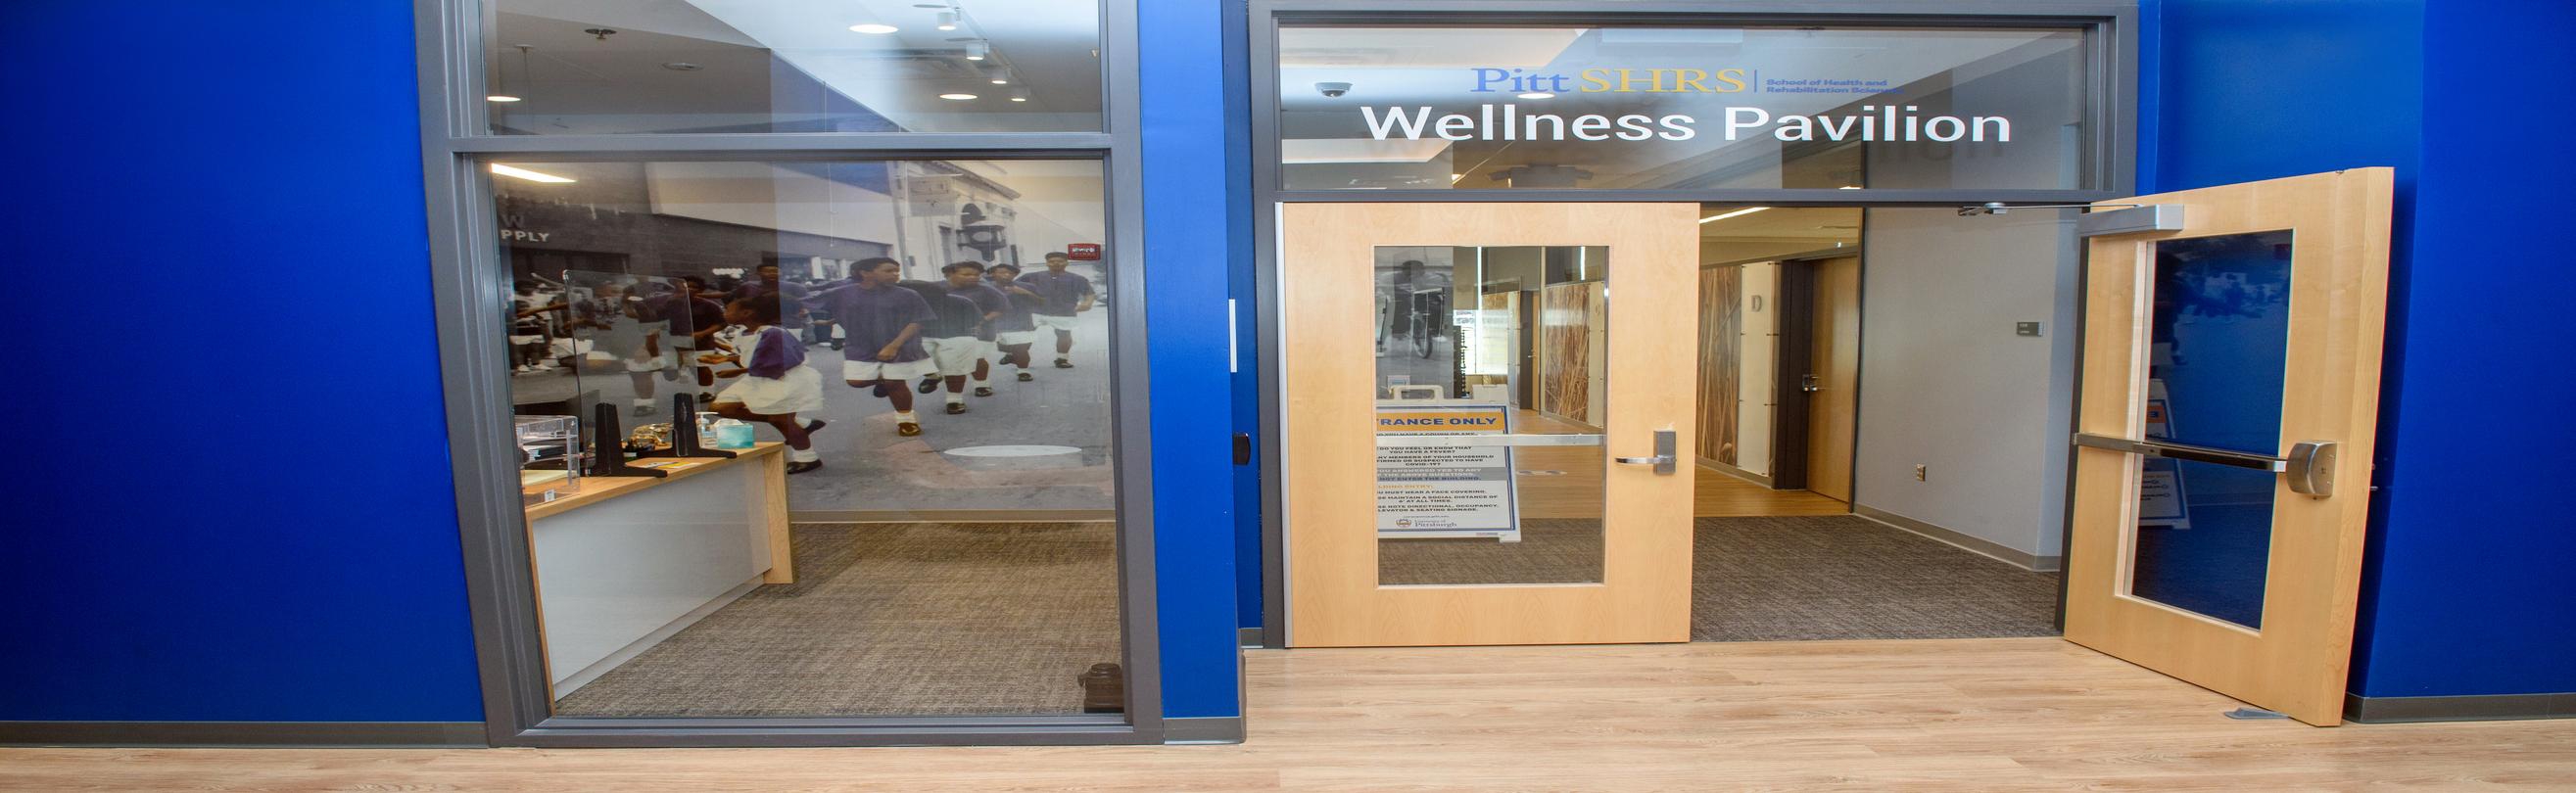 Wellness Pavilion Door